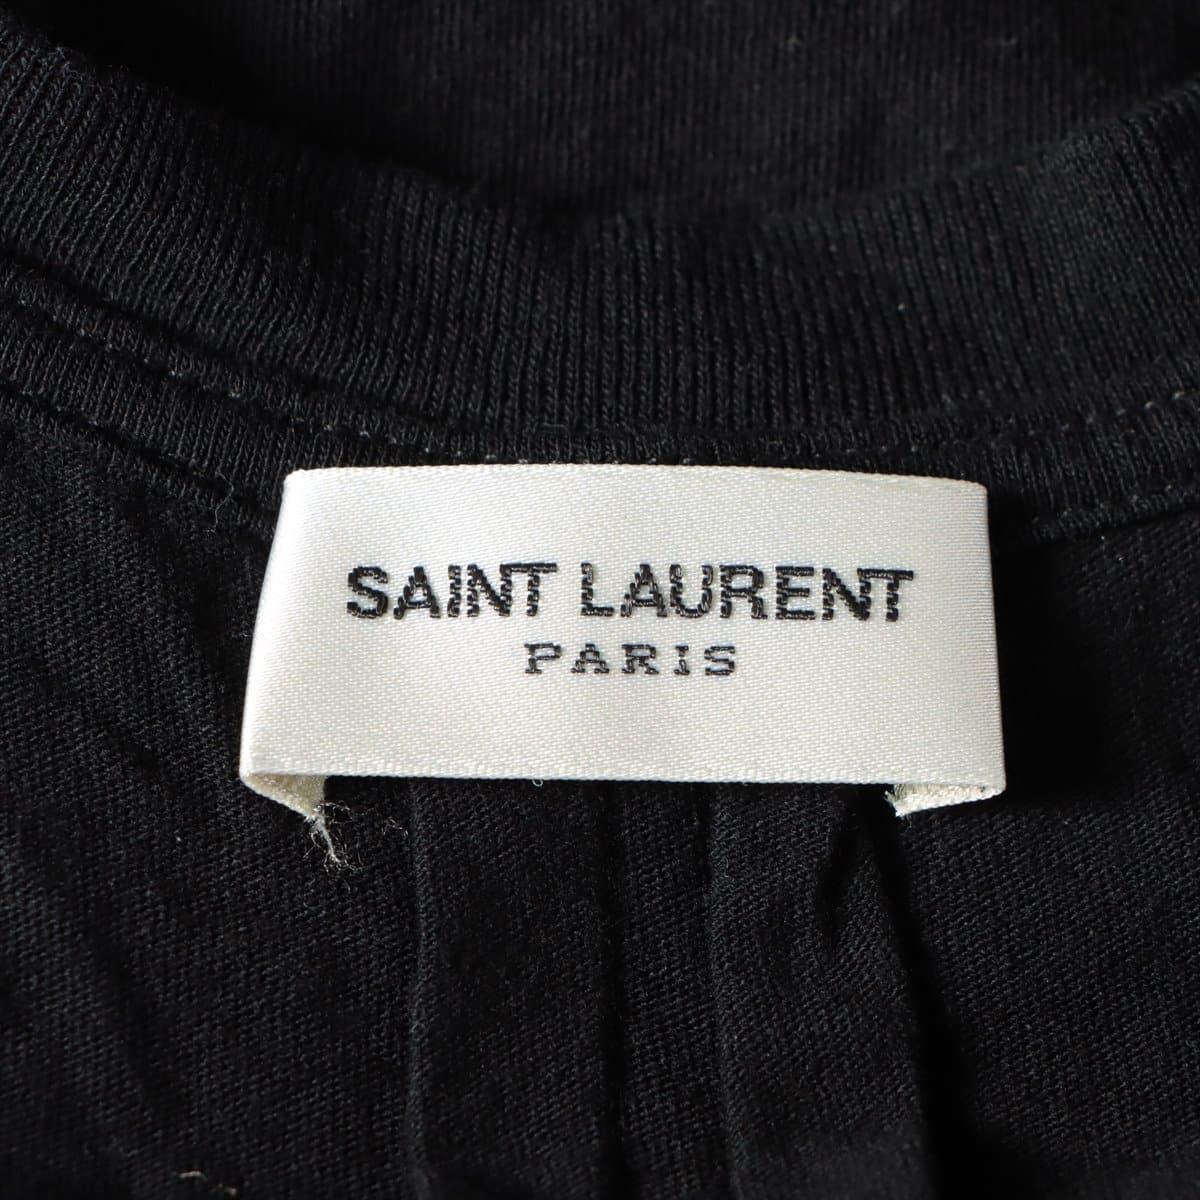 Saint Laurent Paris 15 years Cotton T-shirt S Ladies' Black  Star